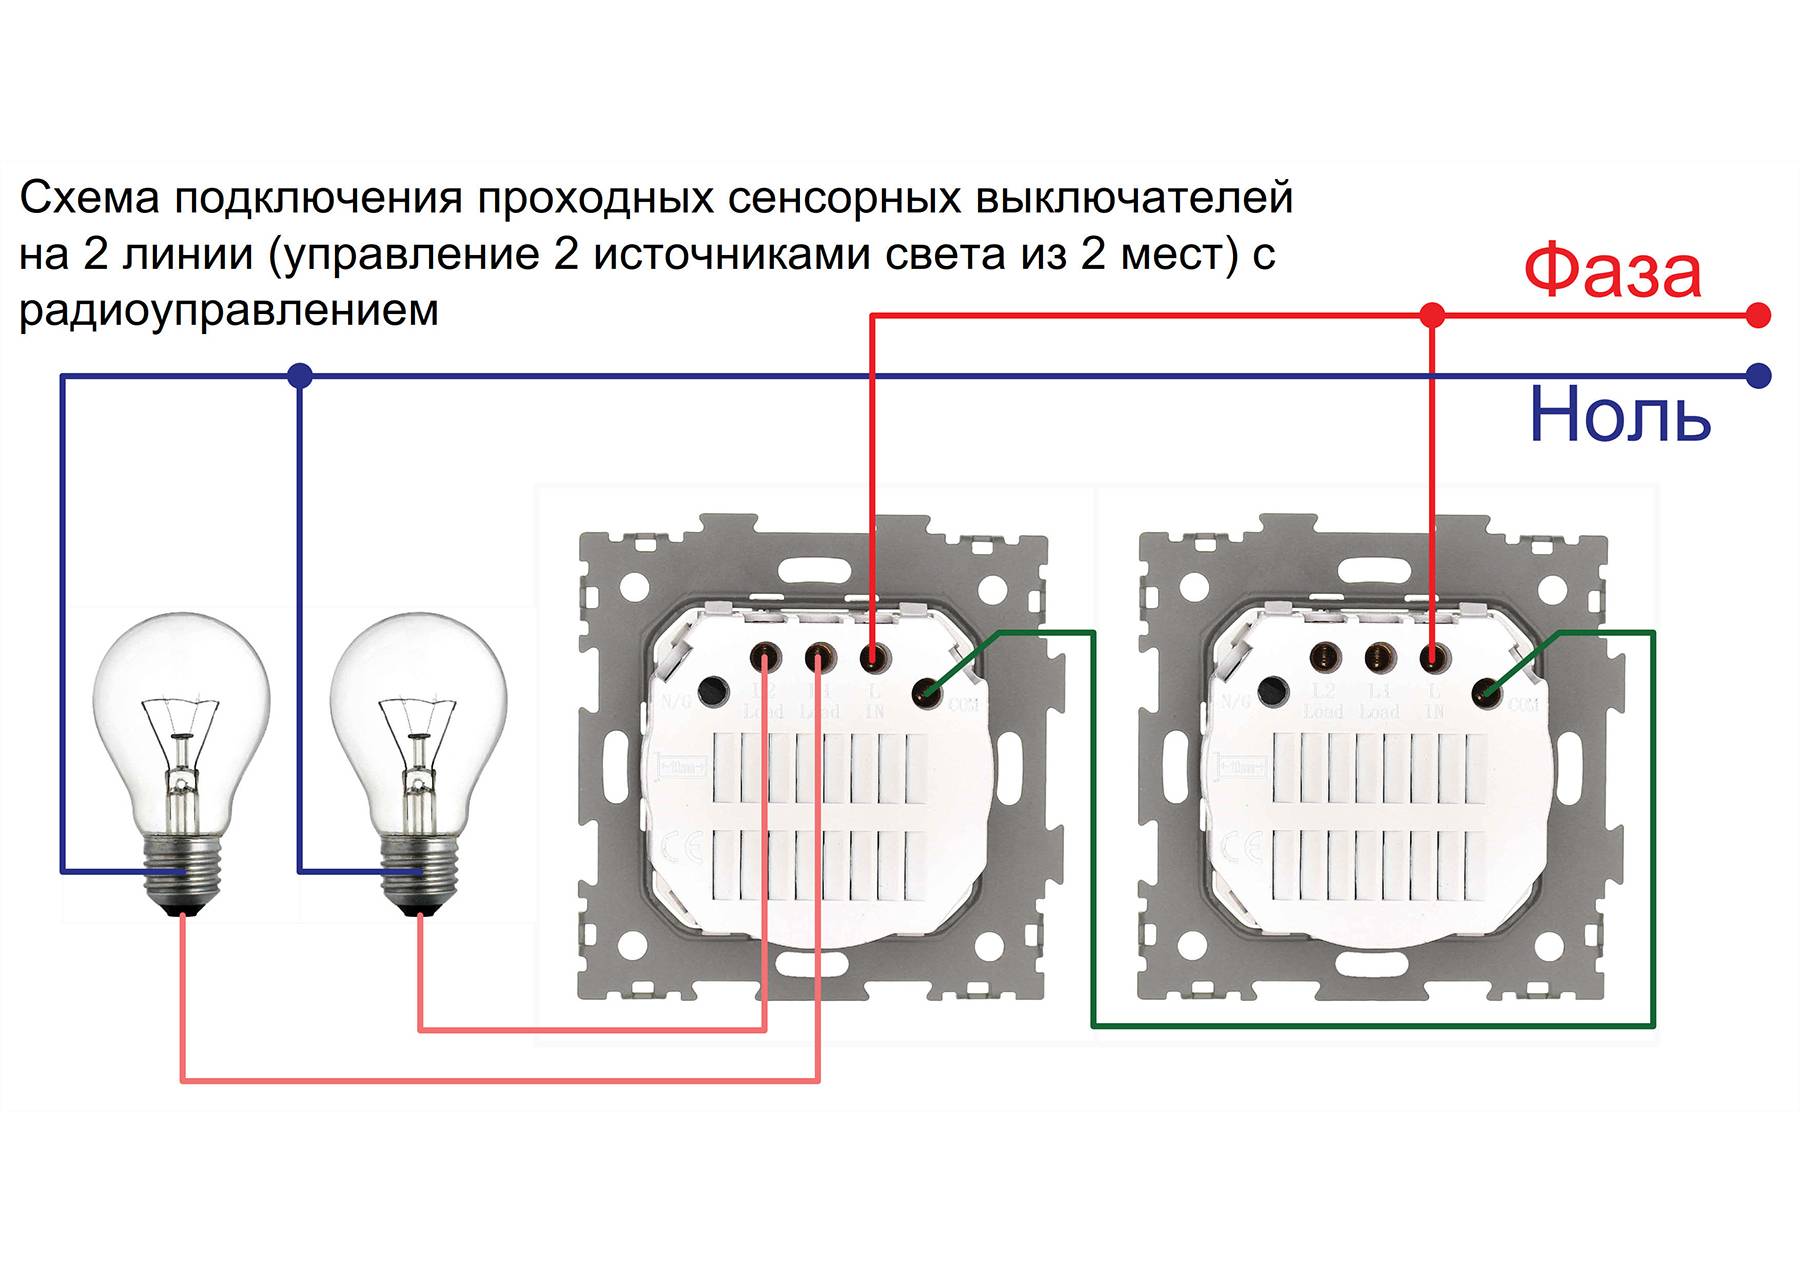 Схема подключения проходного выключателя: подключаем пошагово с двух и трех мест